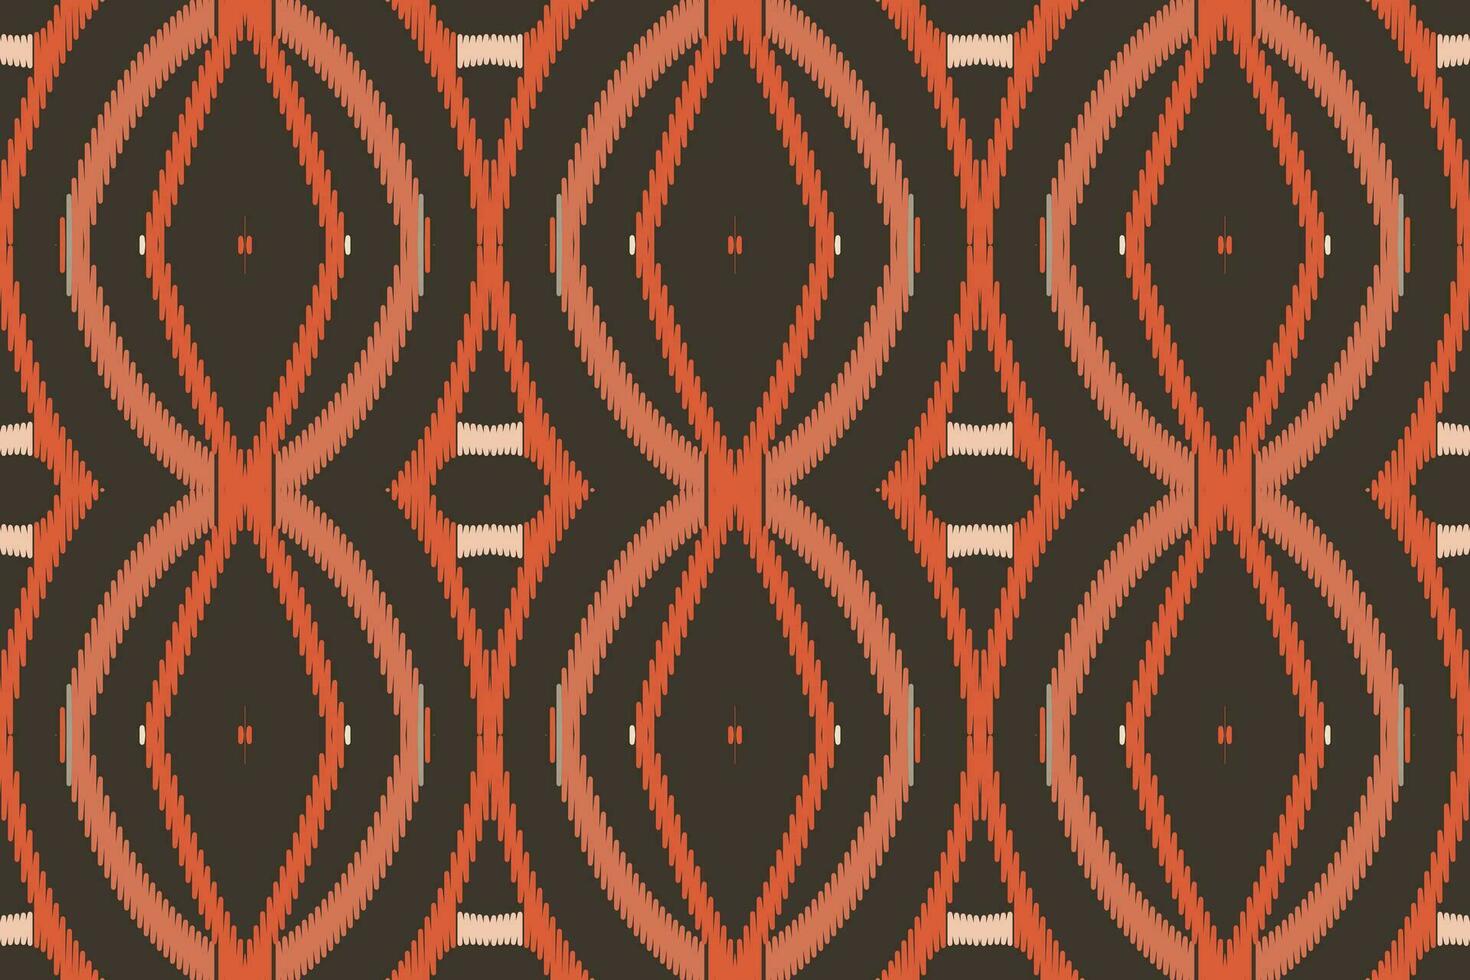 motiv ikat blommig paisley broderi bakgrund. ikat textur geometrisk etnisk orientalisk mönster traditionell.aztec stil abstrakt vektor design för textur, tyg, kläder, inslagning, sarong.